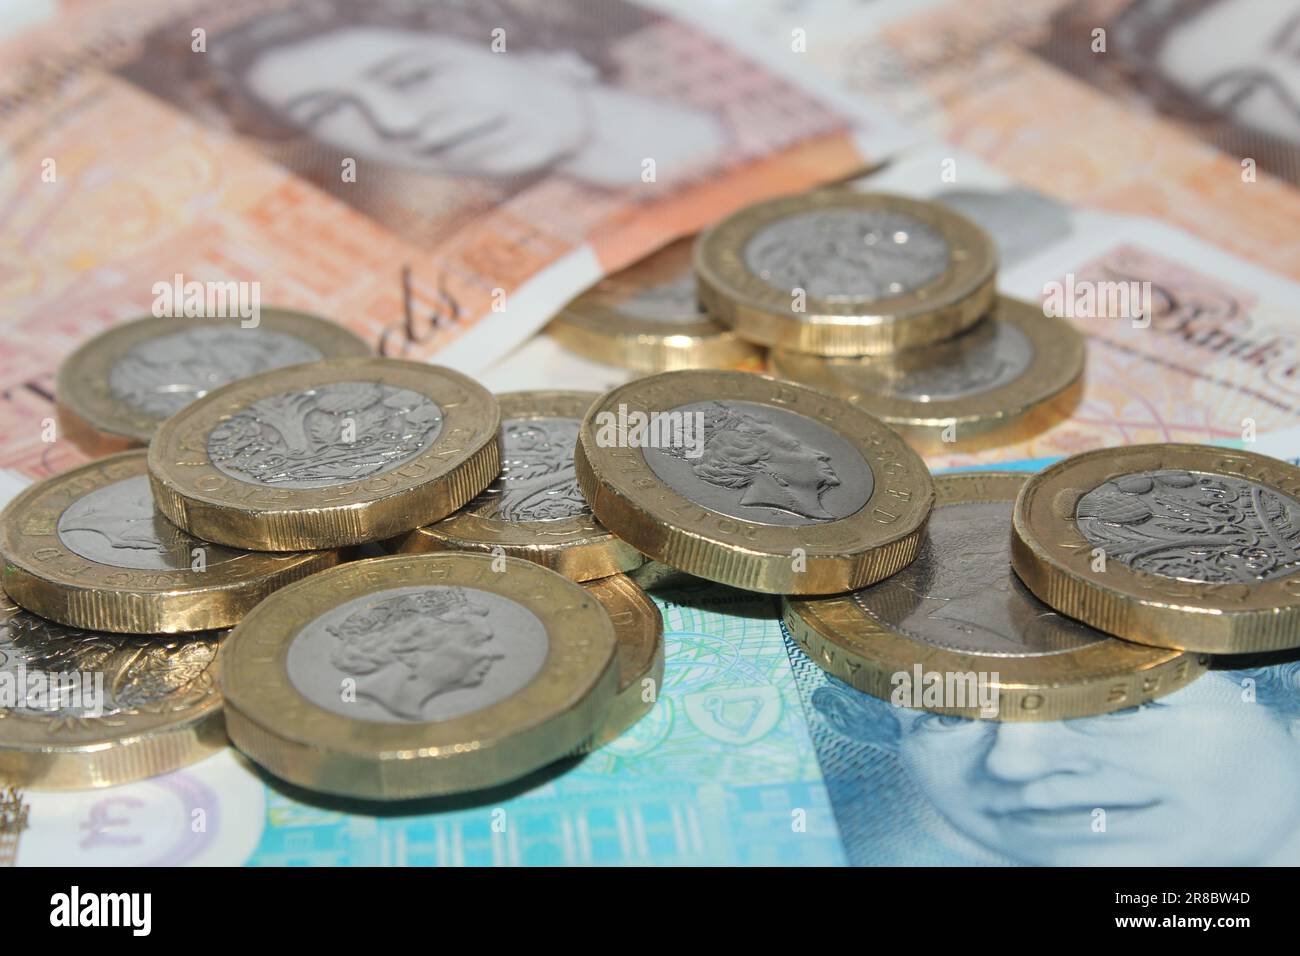 Moneta britannica monete e banconote del regno sterlina da una sterlina monete e banconote da £ 10 sterline e £ 5 sterline primo piano Foto Stock